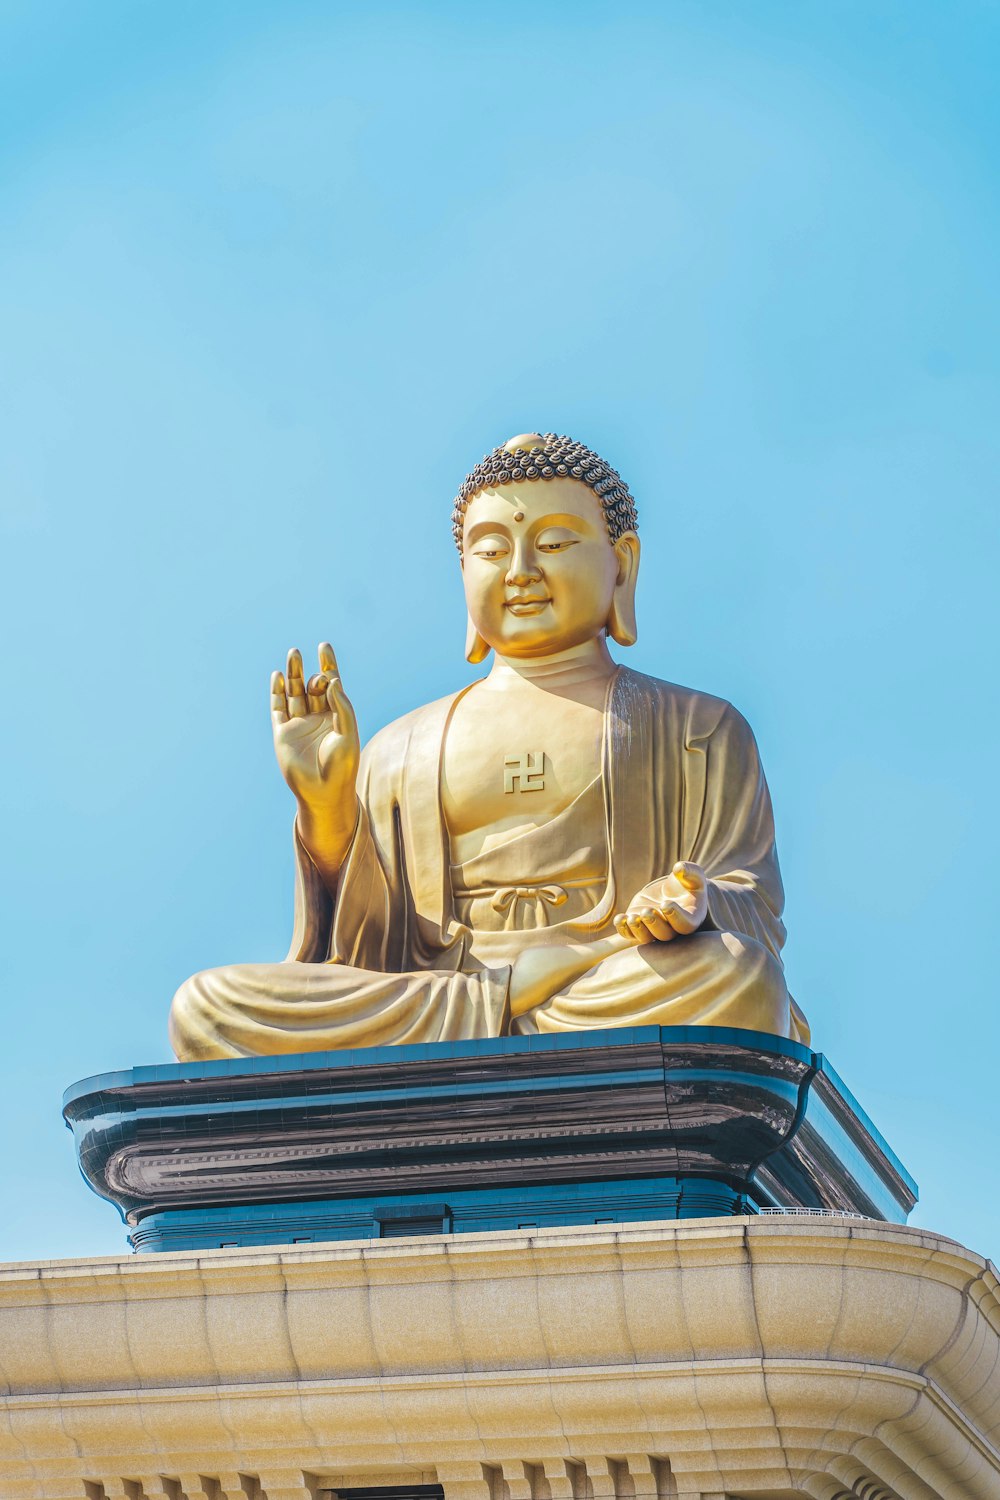 Eine goldene Buddha-Statue auf einem Gebäude